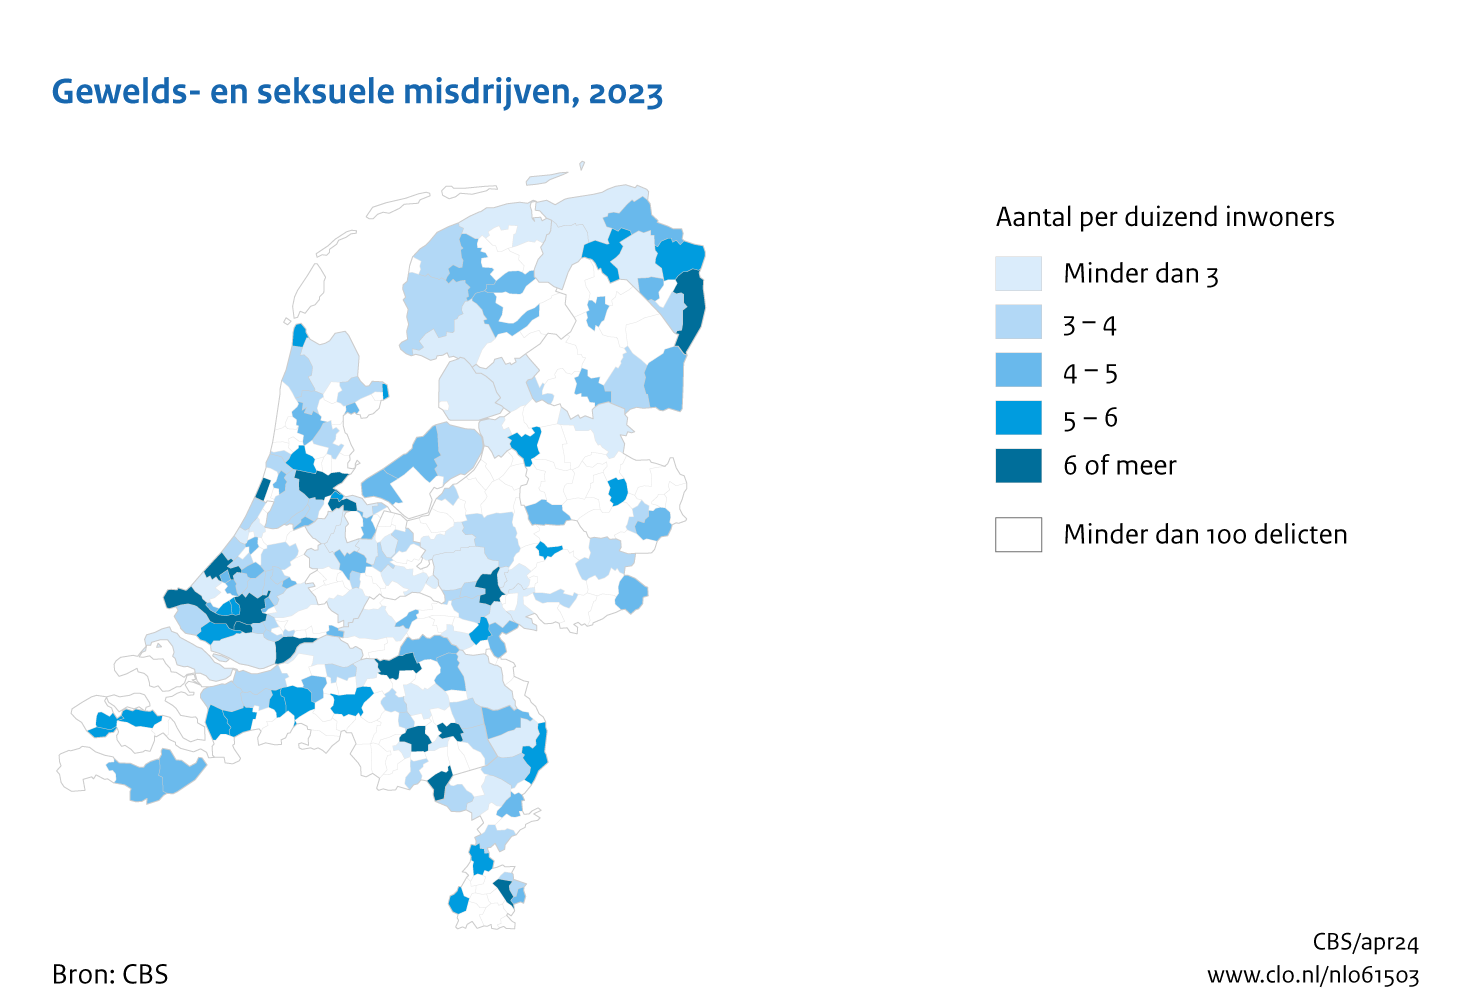 Kaart van gewelds- en seksuele misdrijven per duizend inwoners per gemeente 2023. Aandeel van 6 of meer met name in de grote gemeenten, met uitzondering van Utrecht.